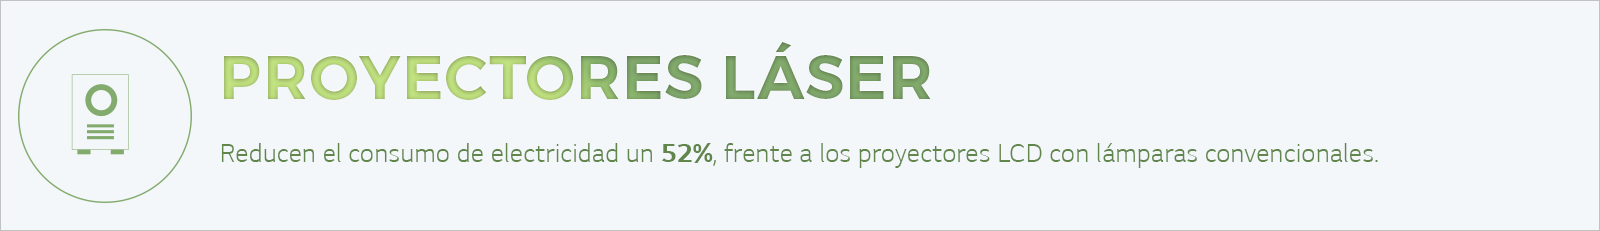 1600x231_proyectores laser